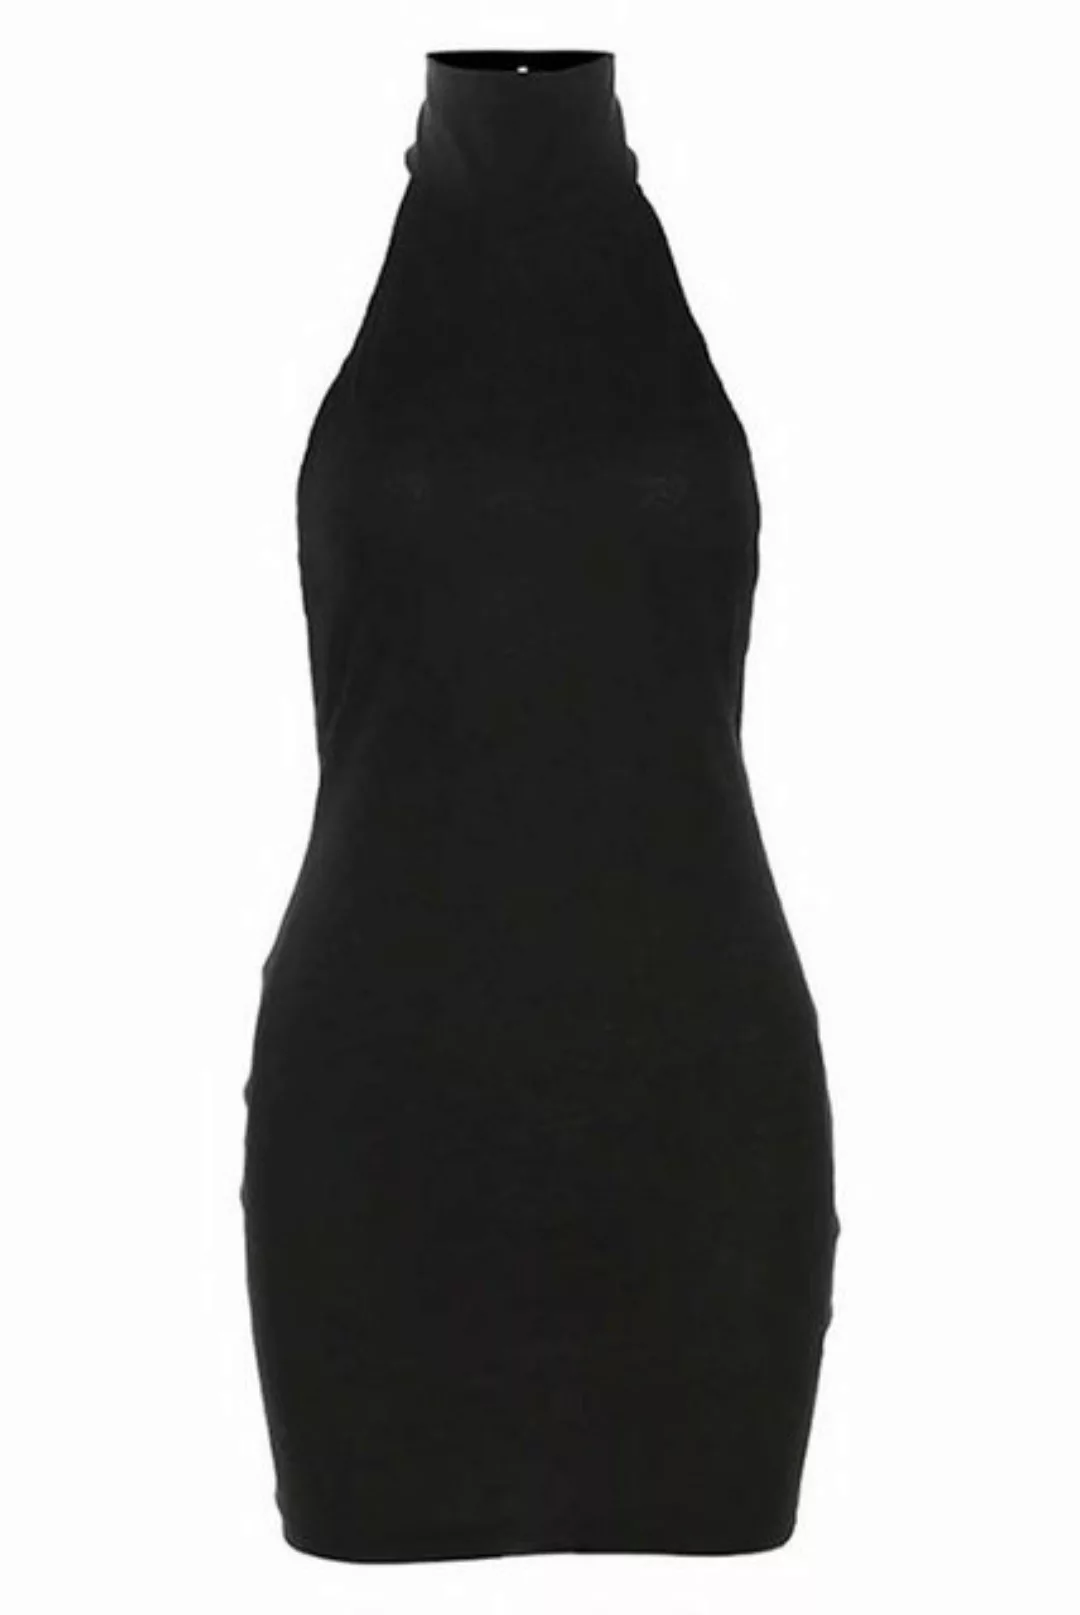 ZWY Dirndl Kleid mit Neckholder rückenfrei schmale Passform kurzes Damenkle günstig online kaufen